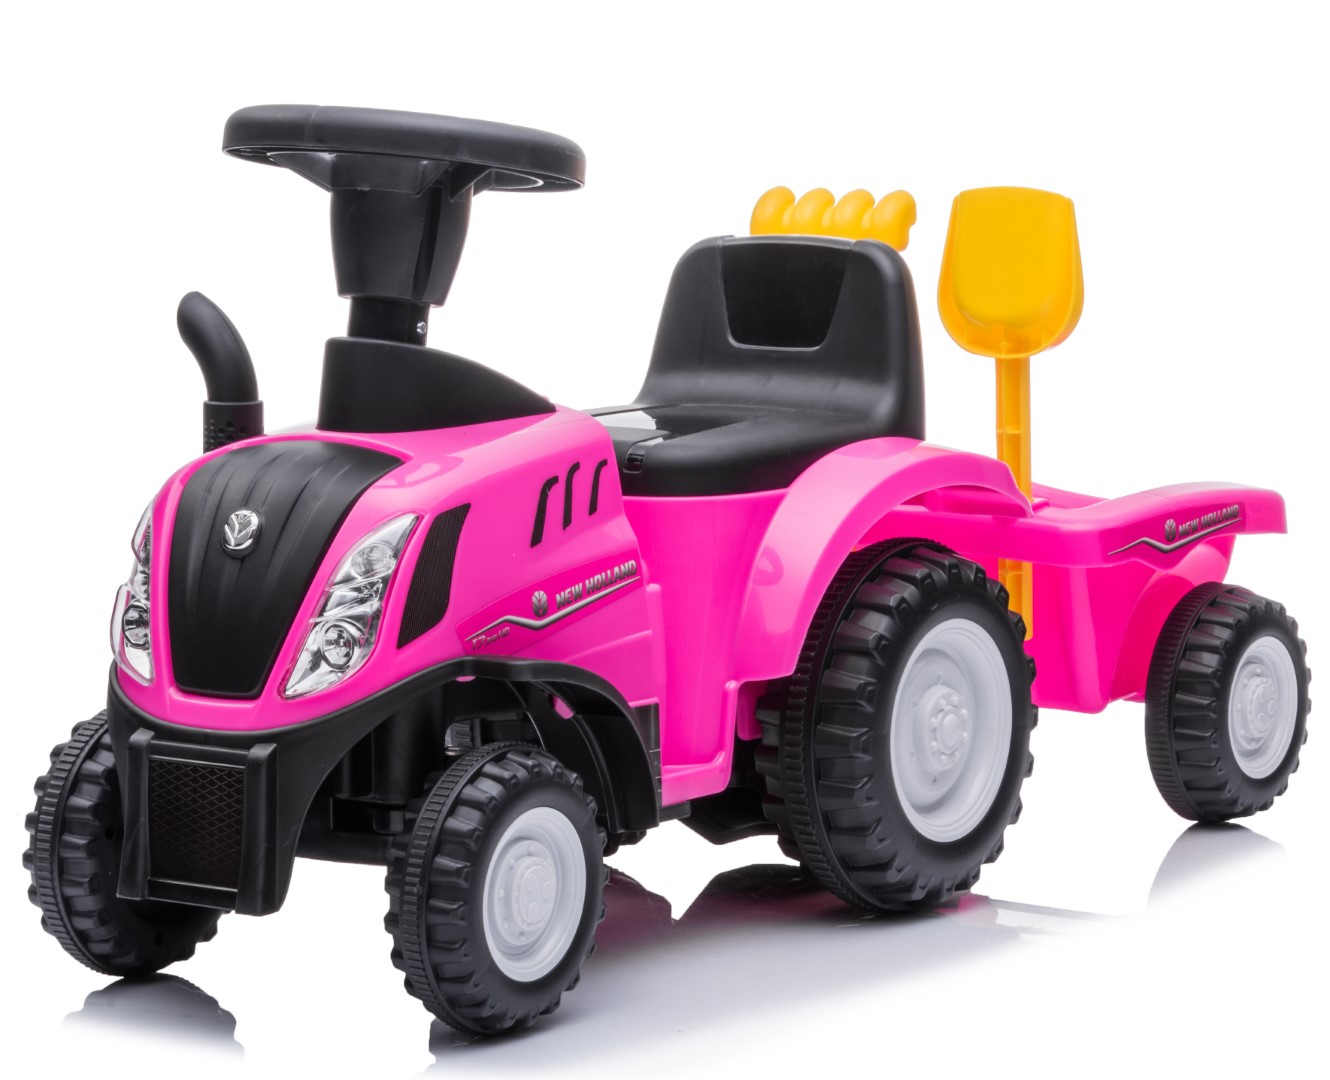 Billede af New Holland T7 Gå-Traktor med Trailer og værktøj, Pink